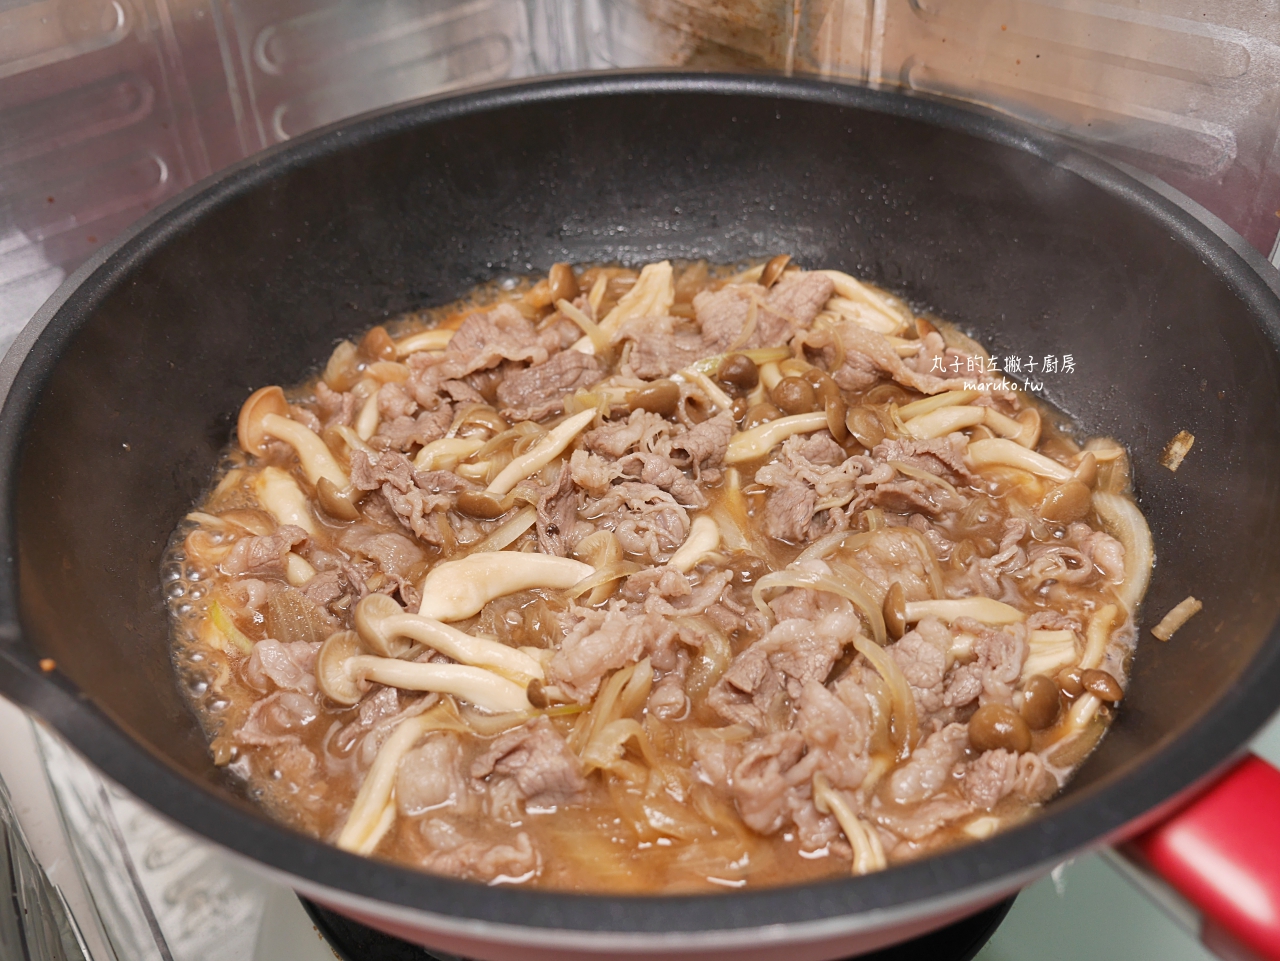 【食譜】牛丼 簡單醬汁做日式牛肉蓋飯 10分鐘上菜 快速晚餐做法 @Maruko與美食有個約會